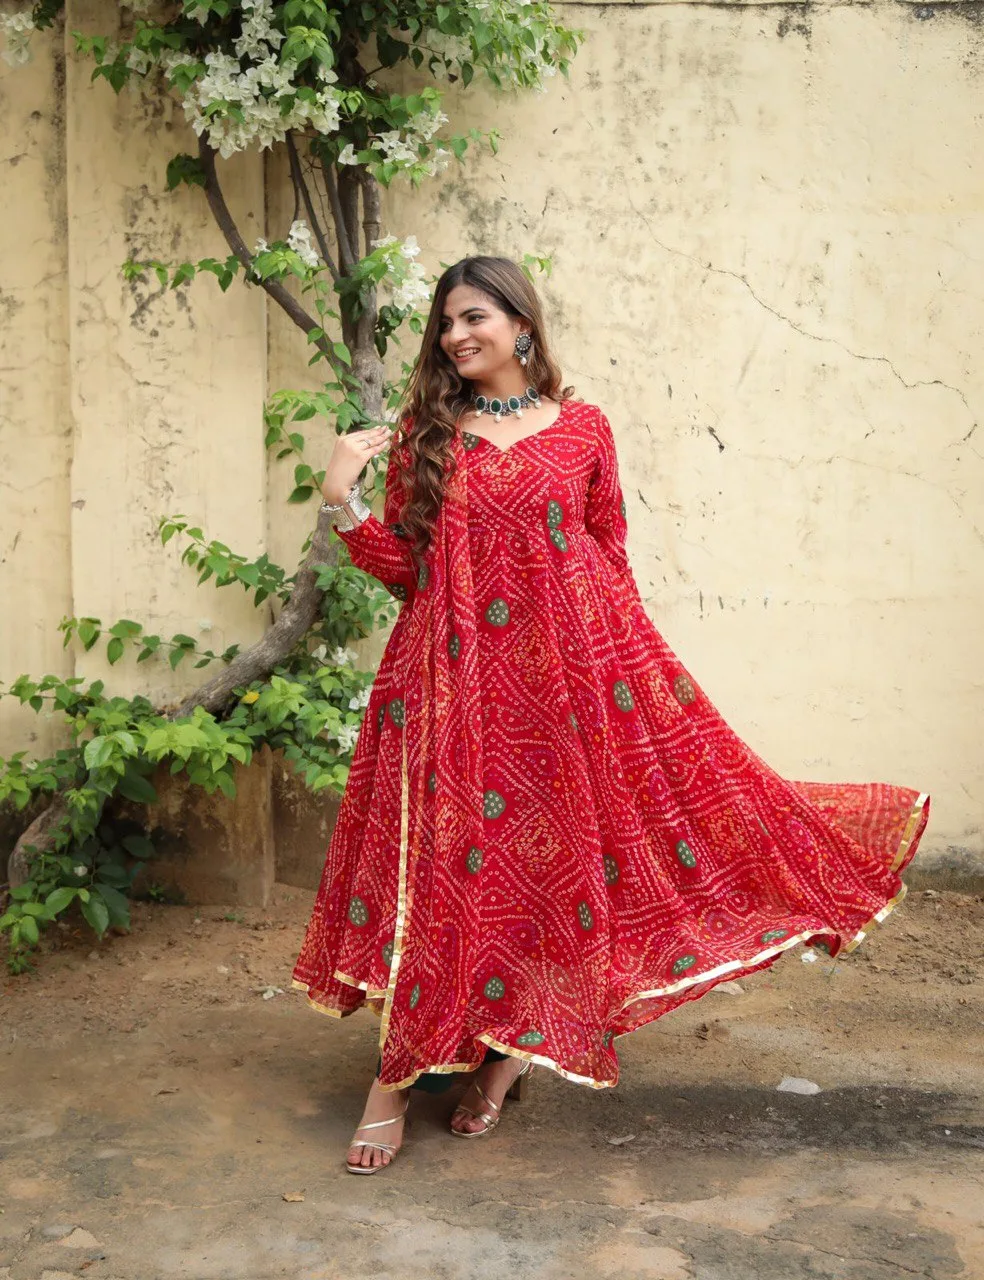 Elegant Anarkali Patterns For Stitching -Storyvogue.com | Anarkali dress  pattern, Long gown design, Party wear indian dresses